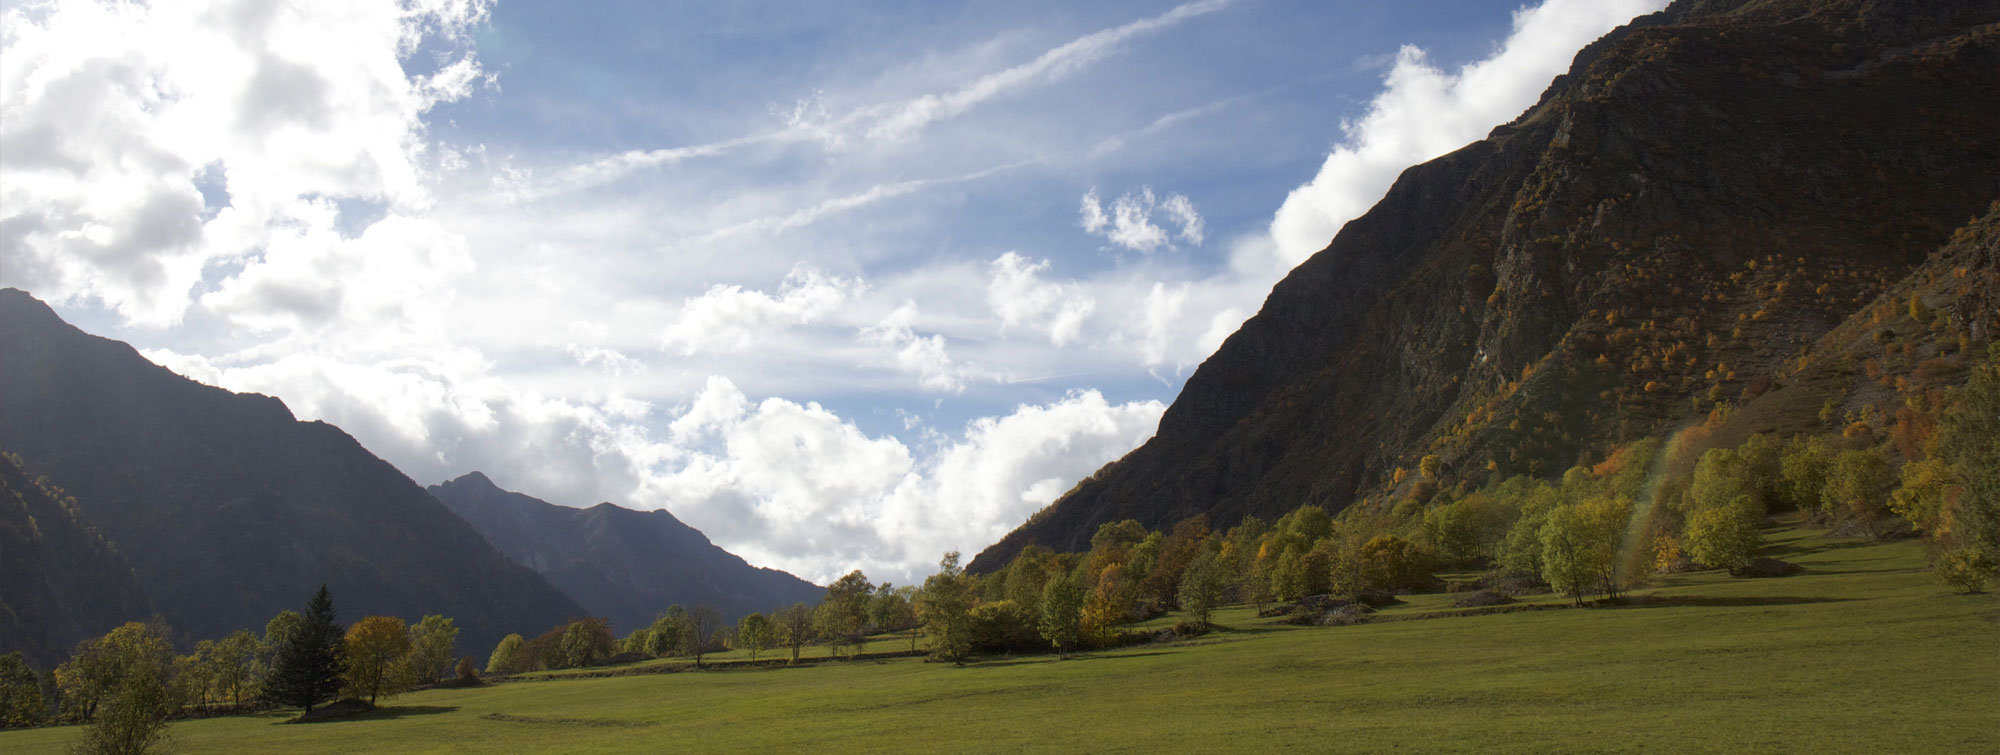 Valjouffrey dans le Valbonnais paysage de montagne en automne